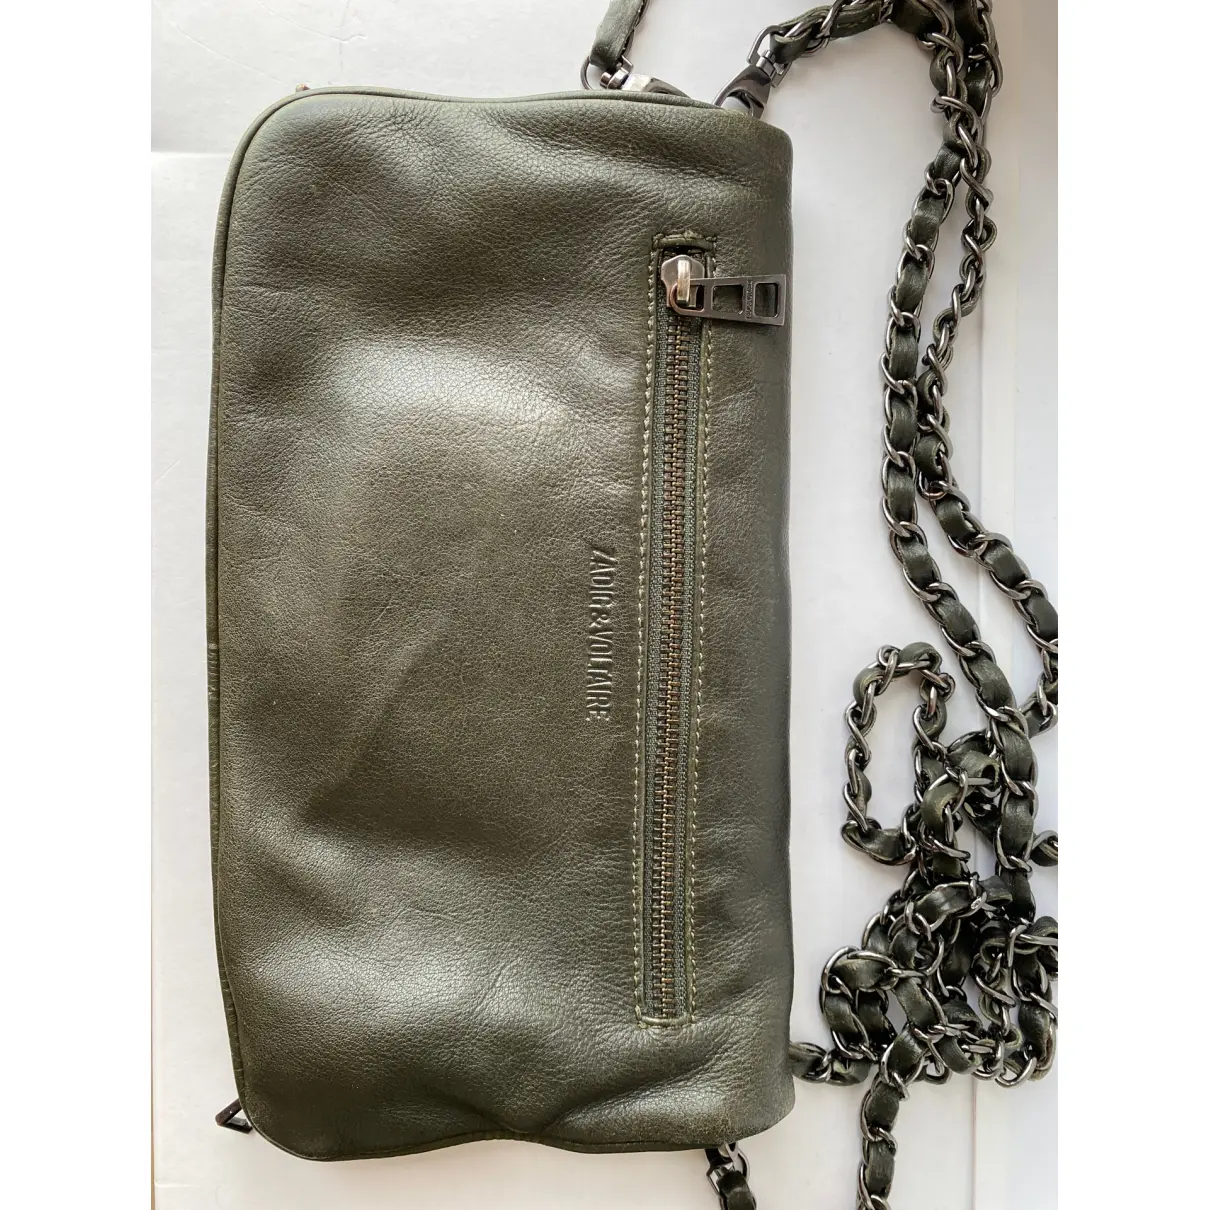 Buy Zadig & Voltaire Rock leather crossbody bag online